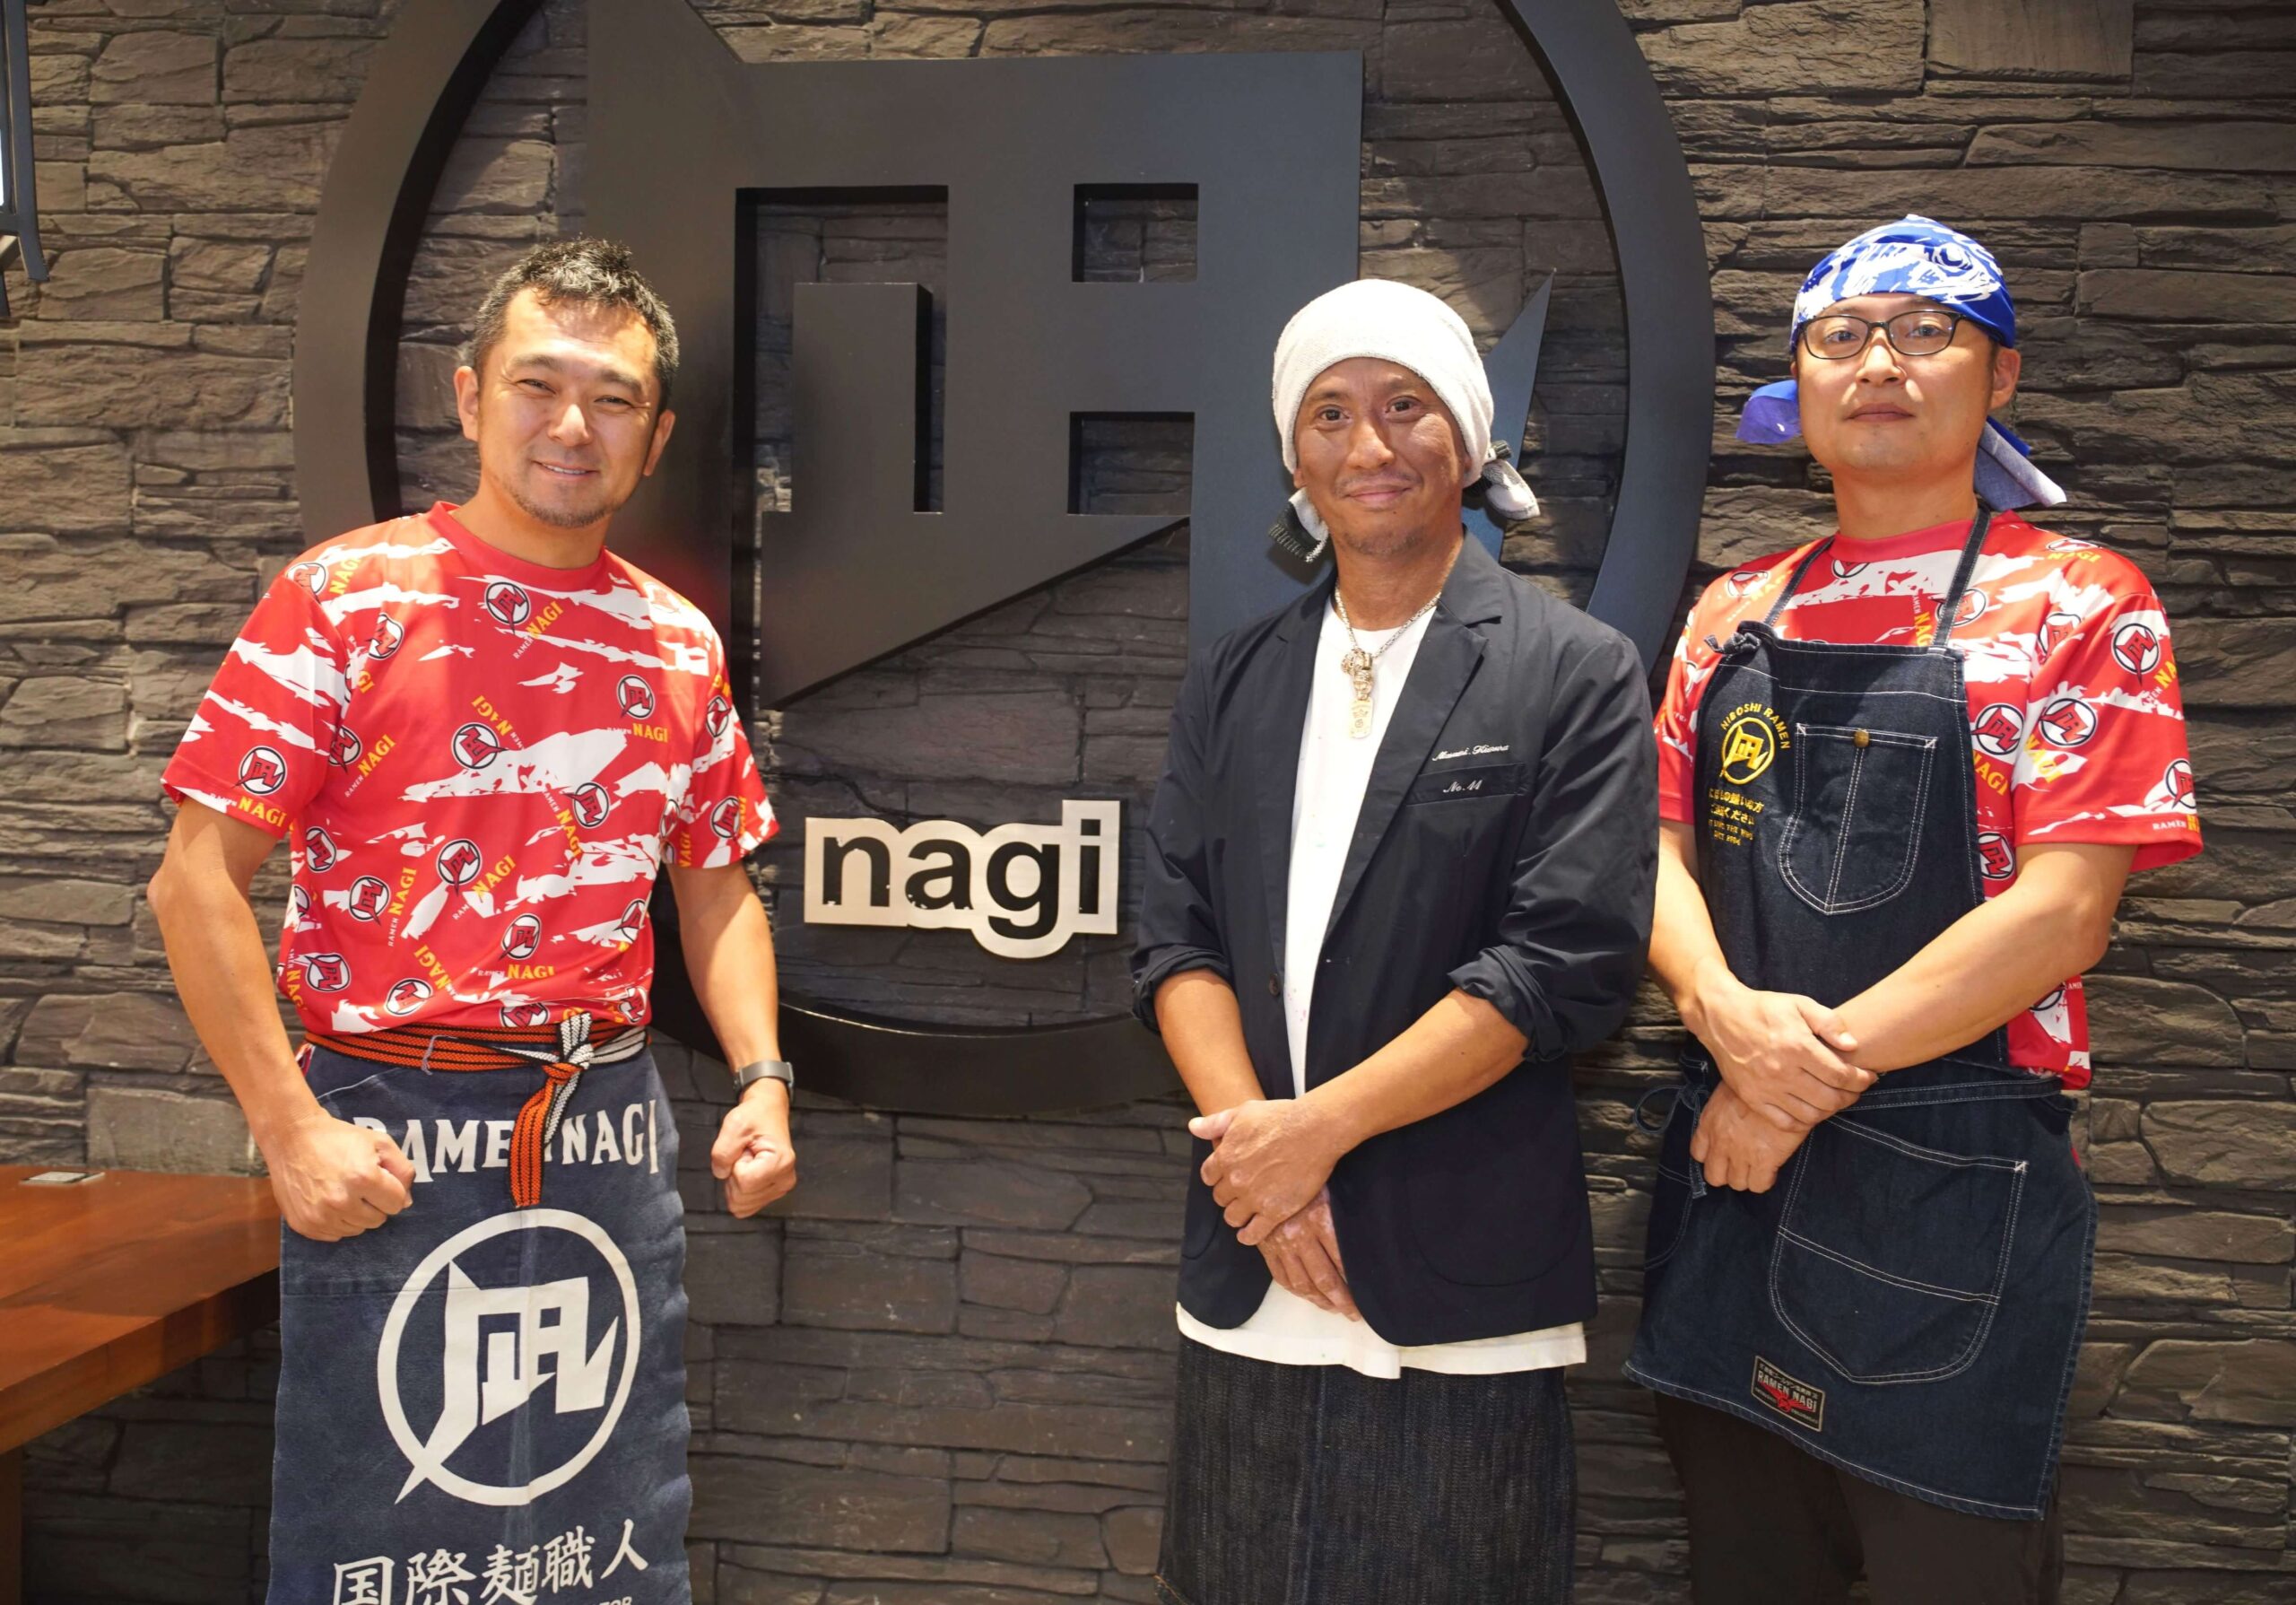 (L-R) Ramen Master Satoshi Ikuta, Ramen Nagi Founder; Chef Masa-san, Ramen No. 11 Founder; and Chef Nishio-San, Ramen Nagi Vice President